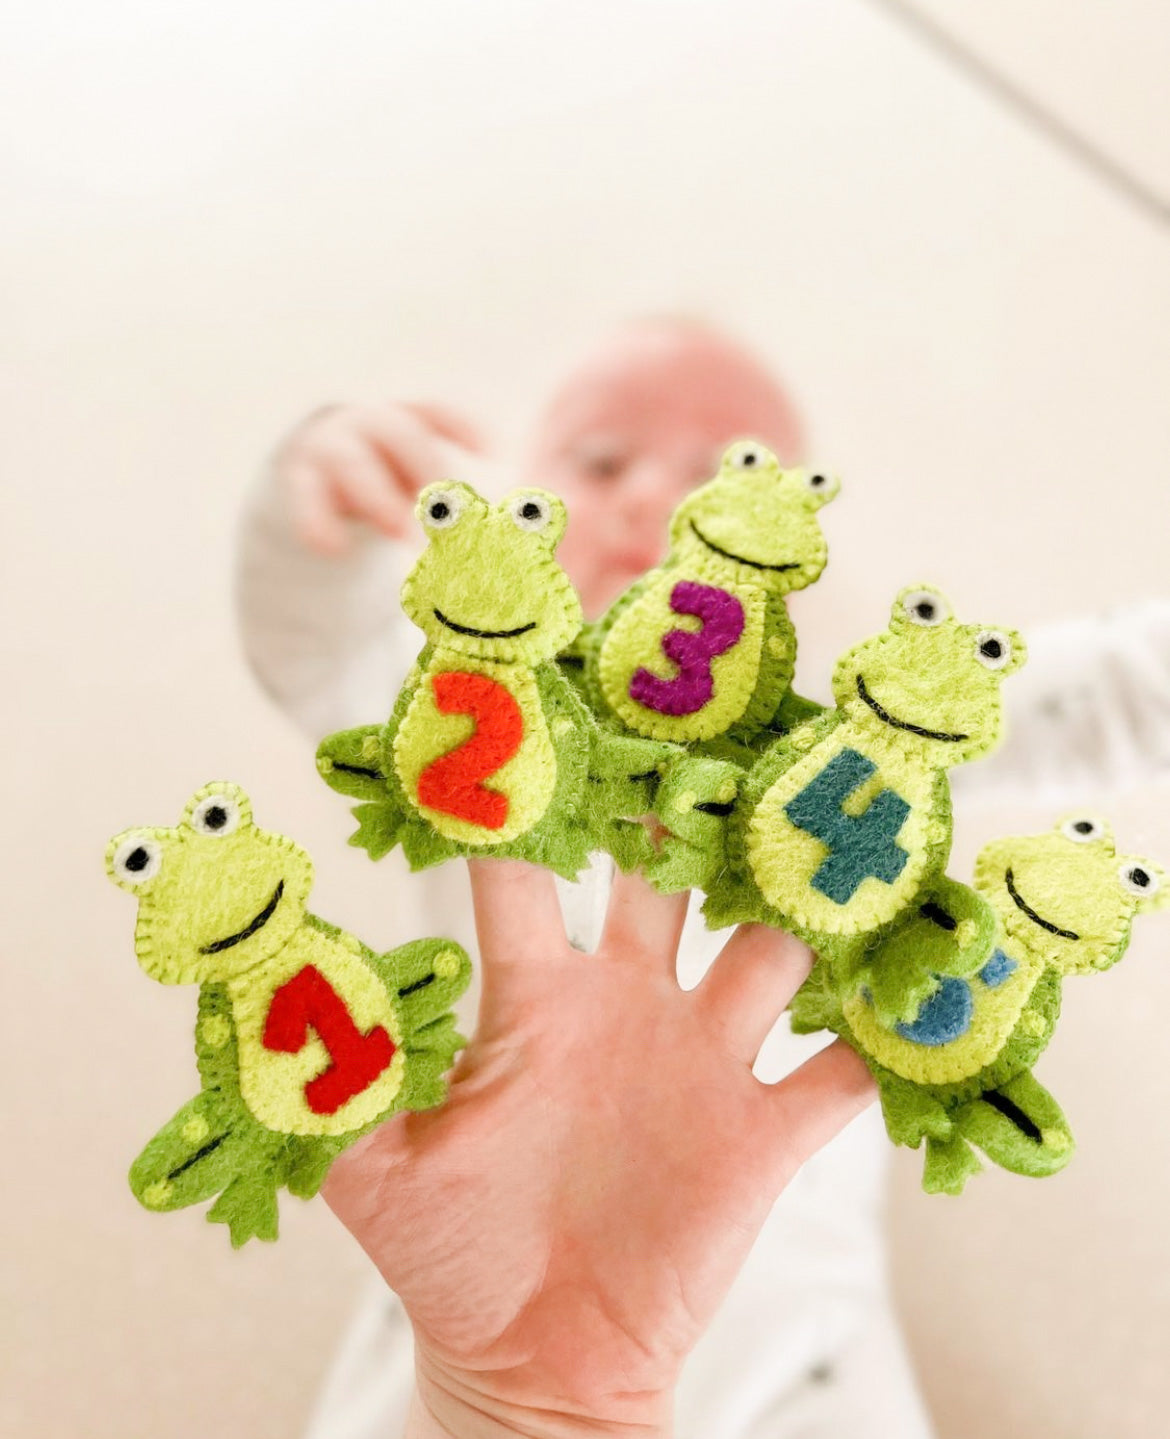 
                  
                    5 Little Speckled Frogs with Log Bag - Finger Puppet Set
                  
                